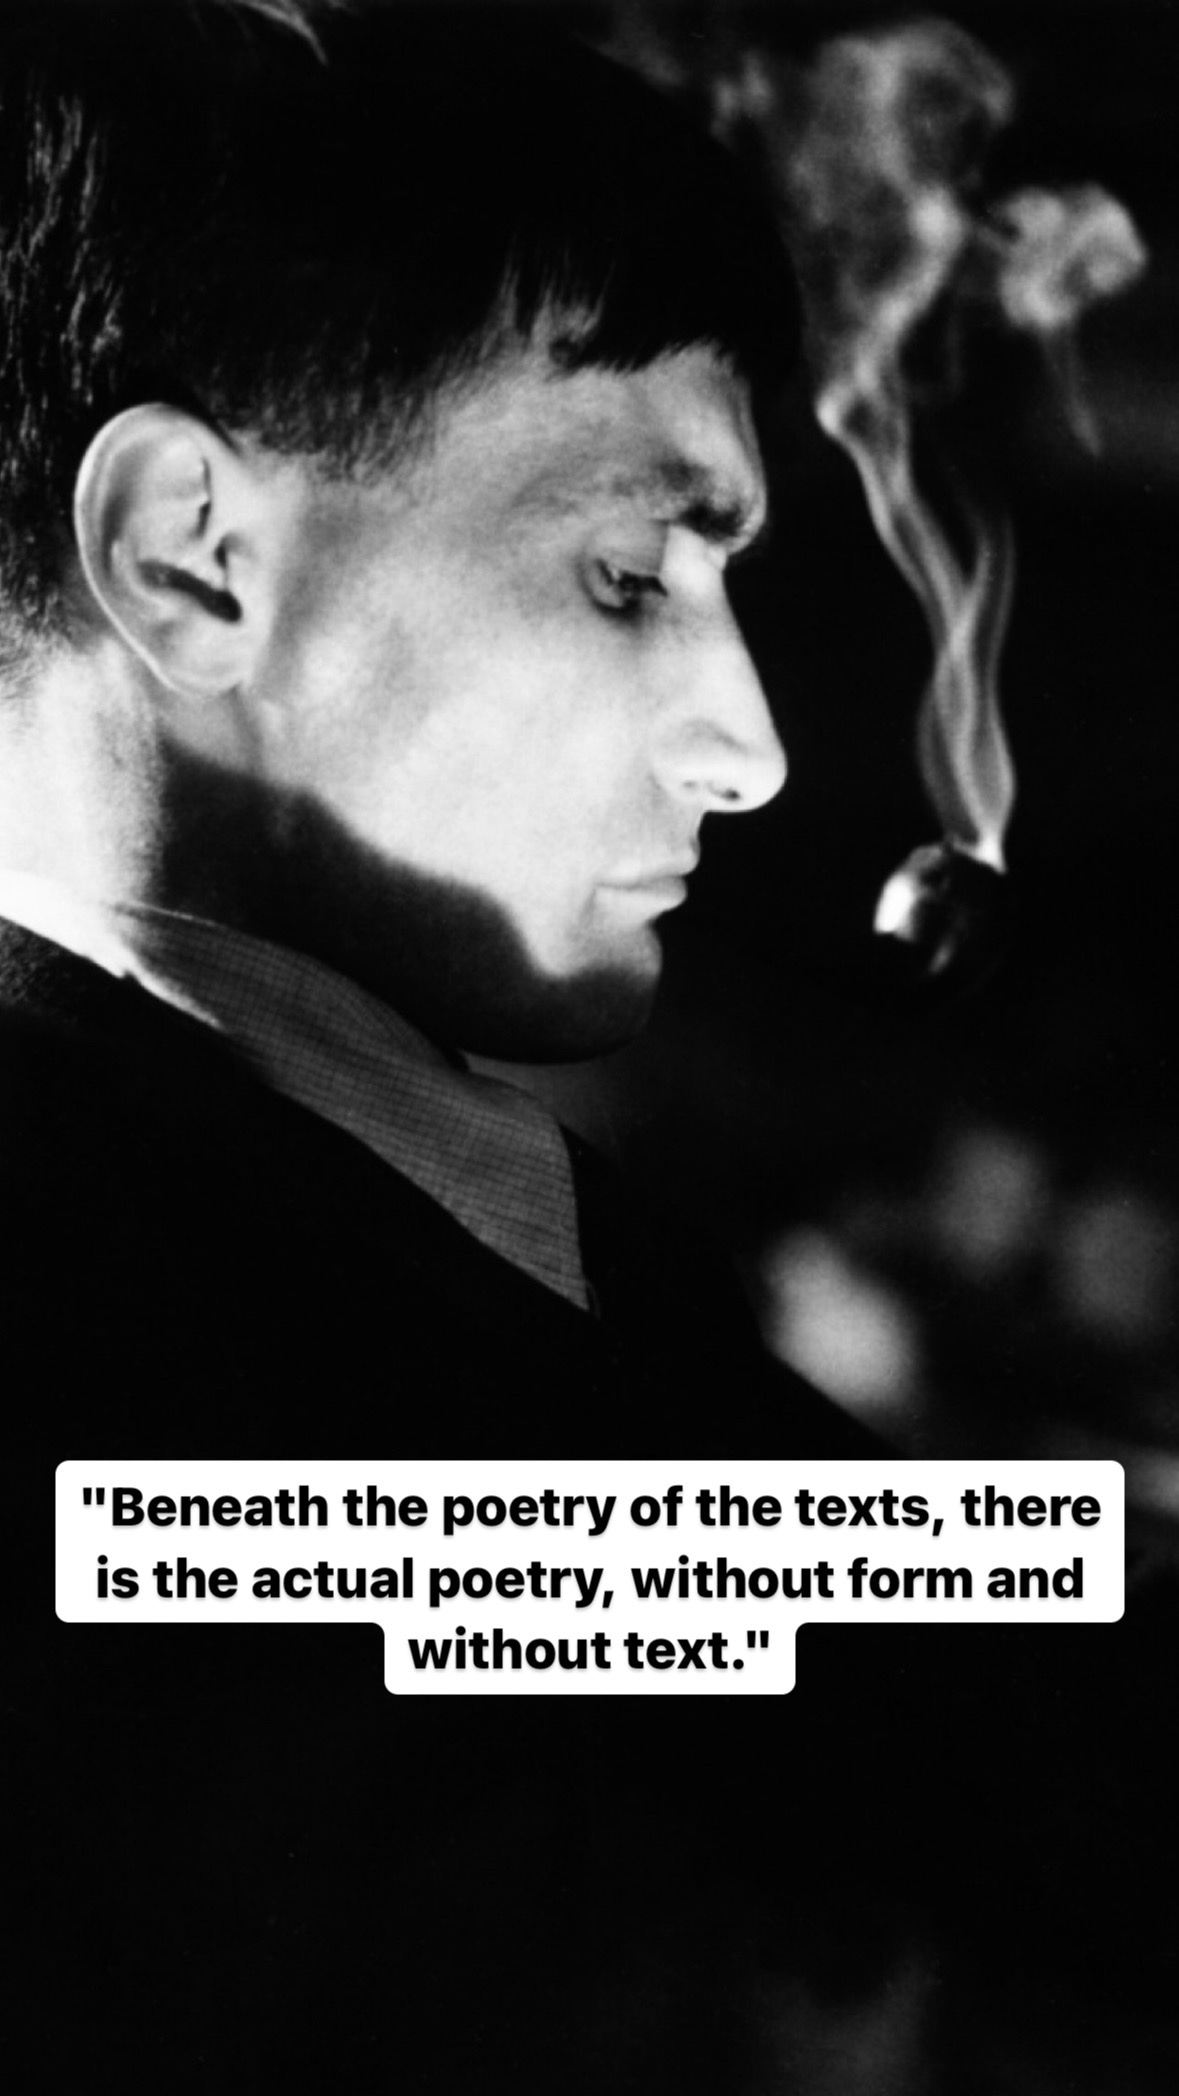 Photo of Antonin Artaud